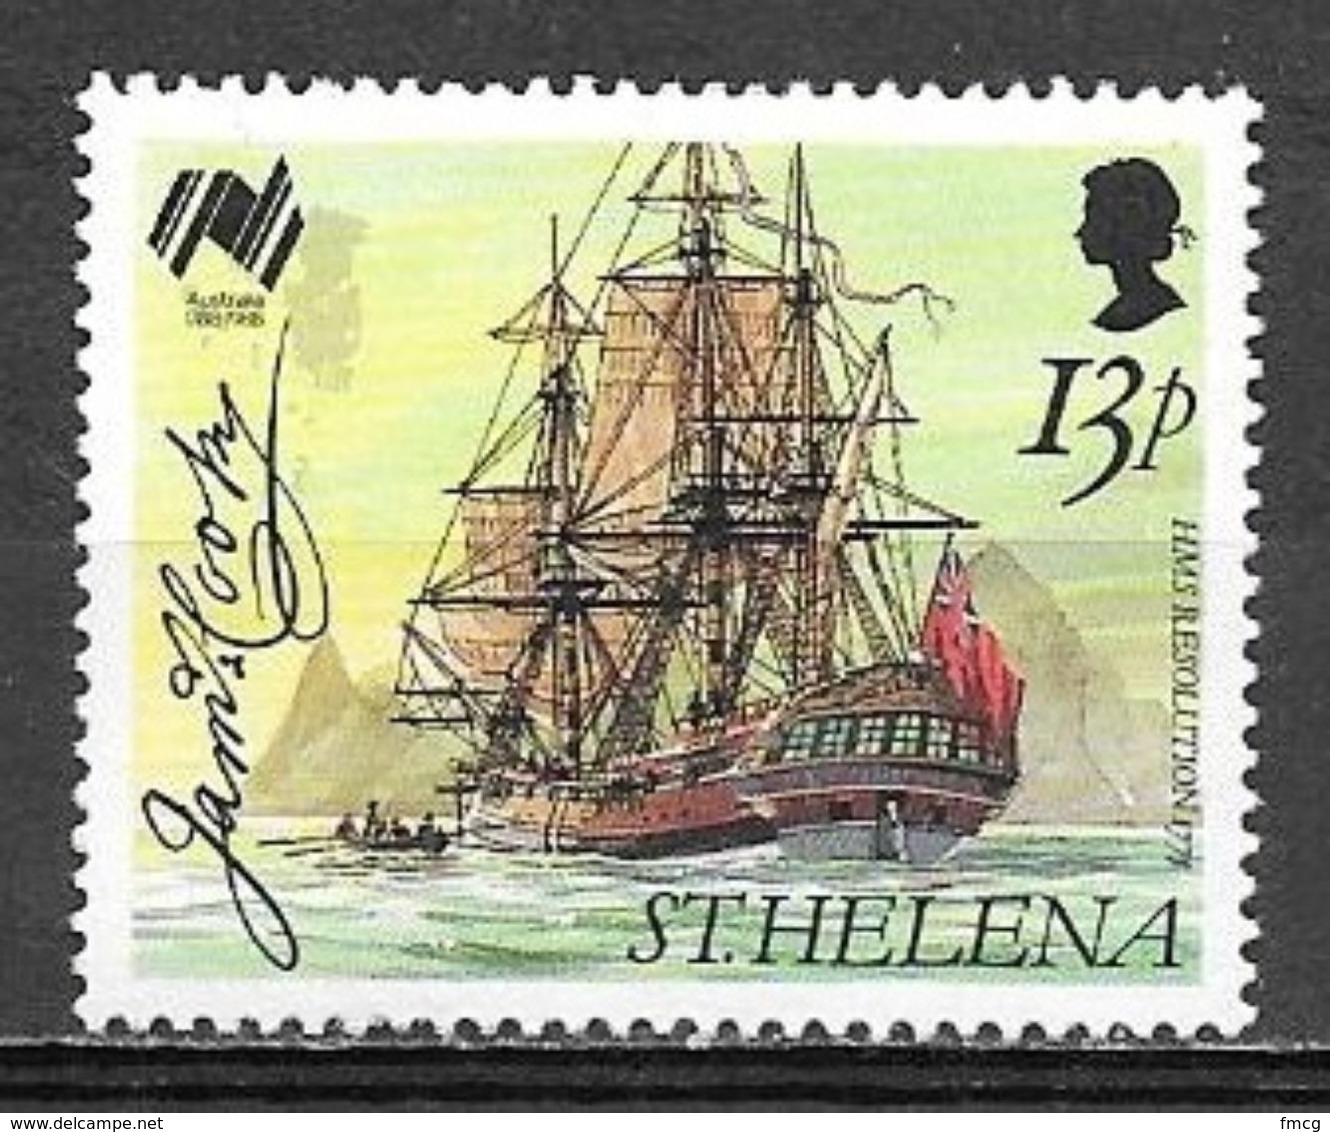 1988 13 Pence Sailing Ship HMS Resolution MNH - Saint Helena Island